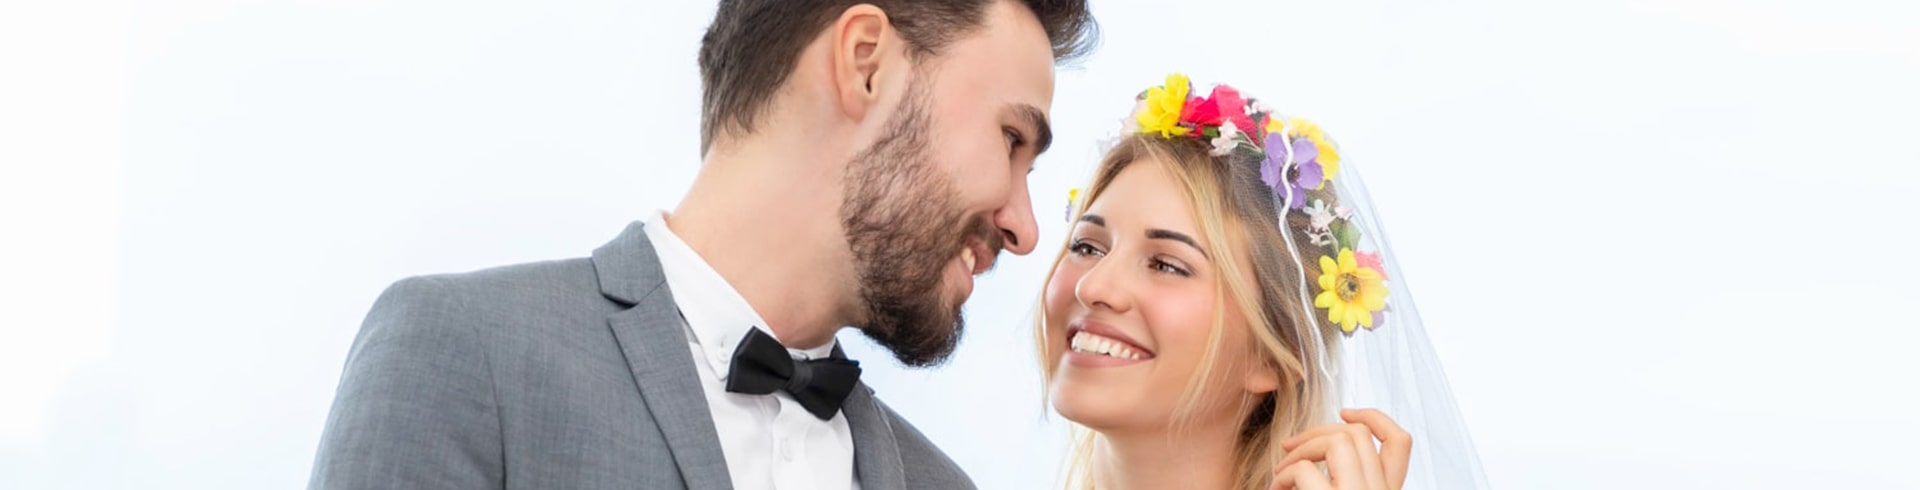 Online Namensänderung nach der Hochzeit in Deutschland: Ein einfacher Leitfaden | smartmoove